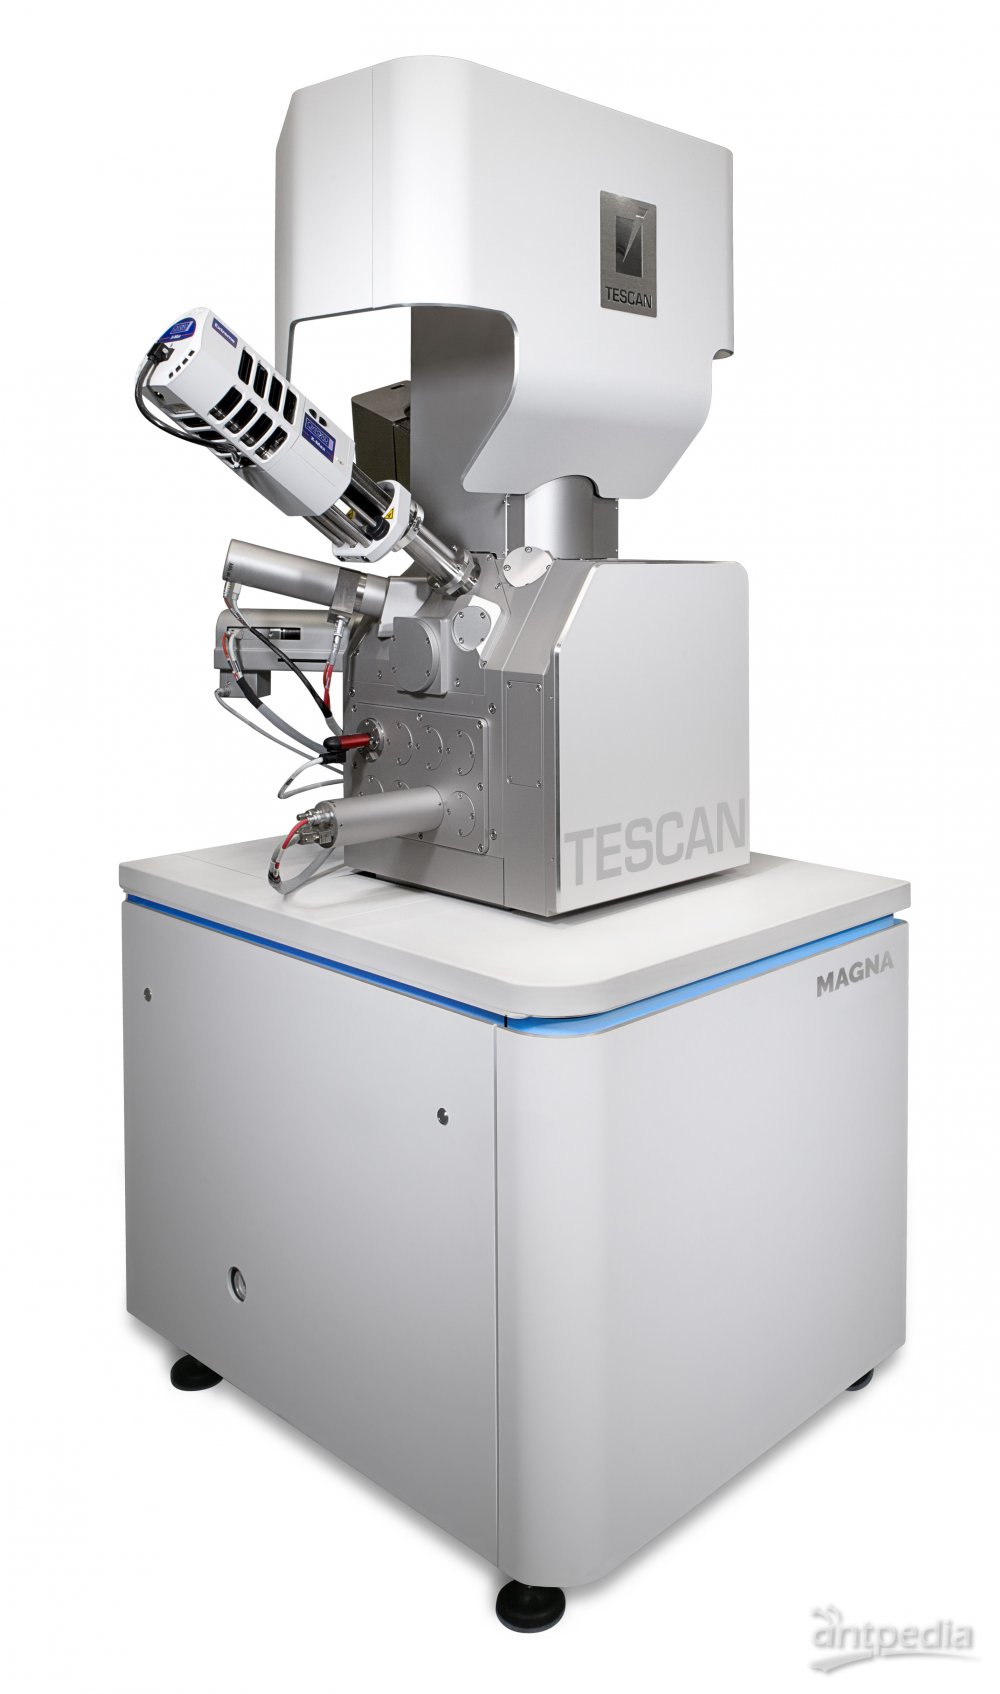 TESCAN <em>MAGNA</em> 超高分辨场发射扫描电镜 用于无涂层生物样品